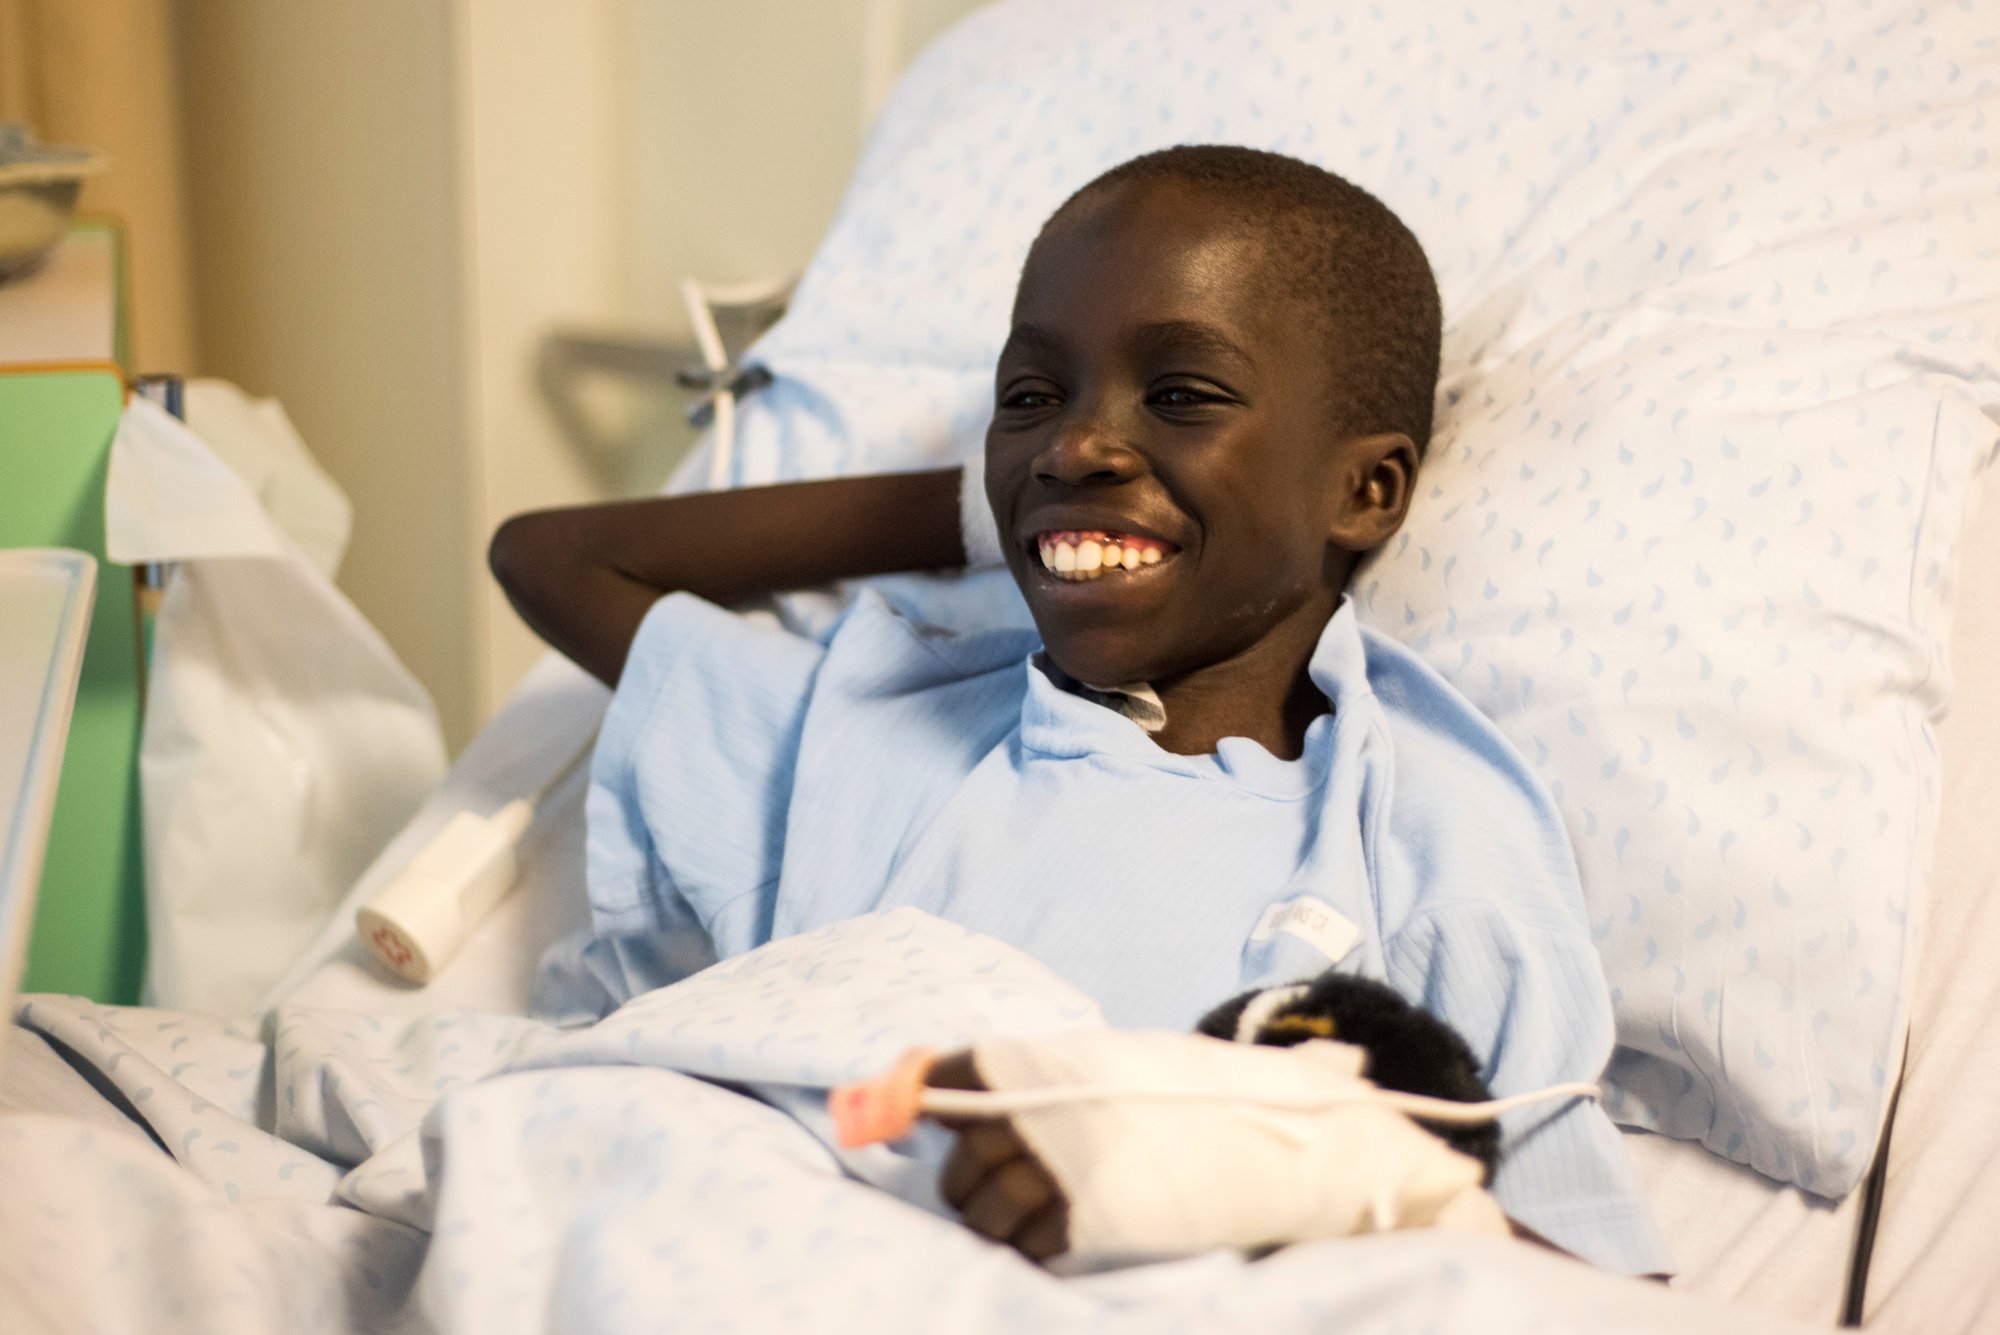 Le jeune Abdou se remet positivement de son opération du coeur - 09 août 2018 - GenèveTerre des hommes: opération d'Adboulaye aux HUG, août 2018